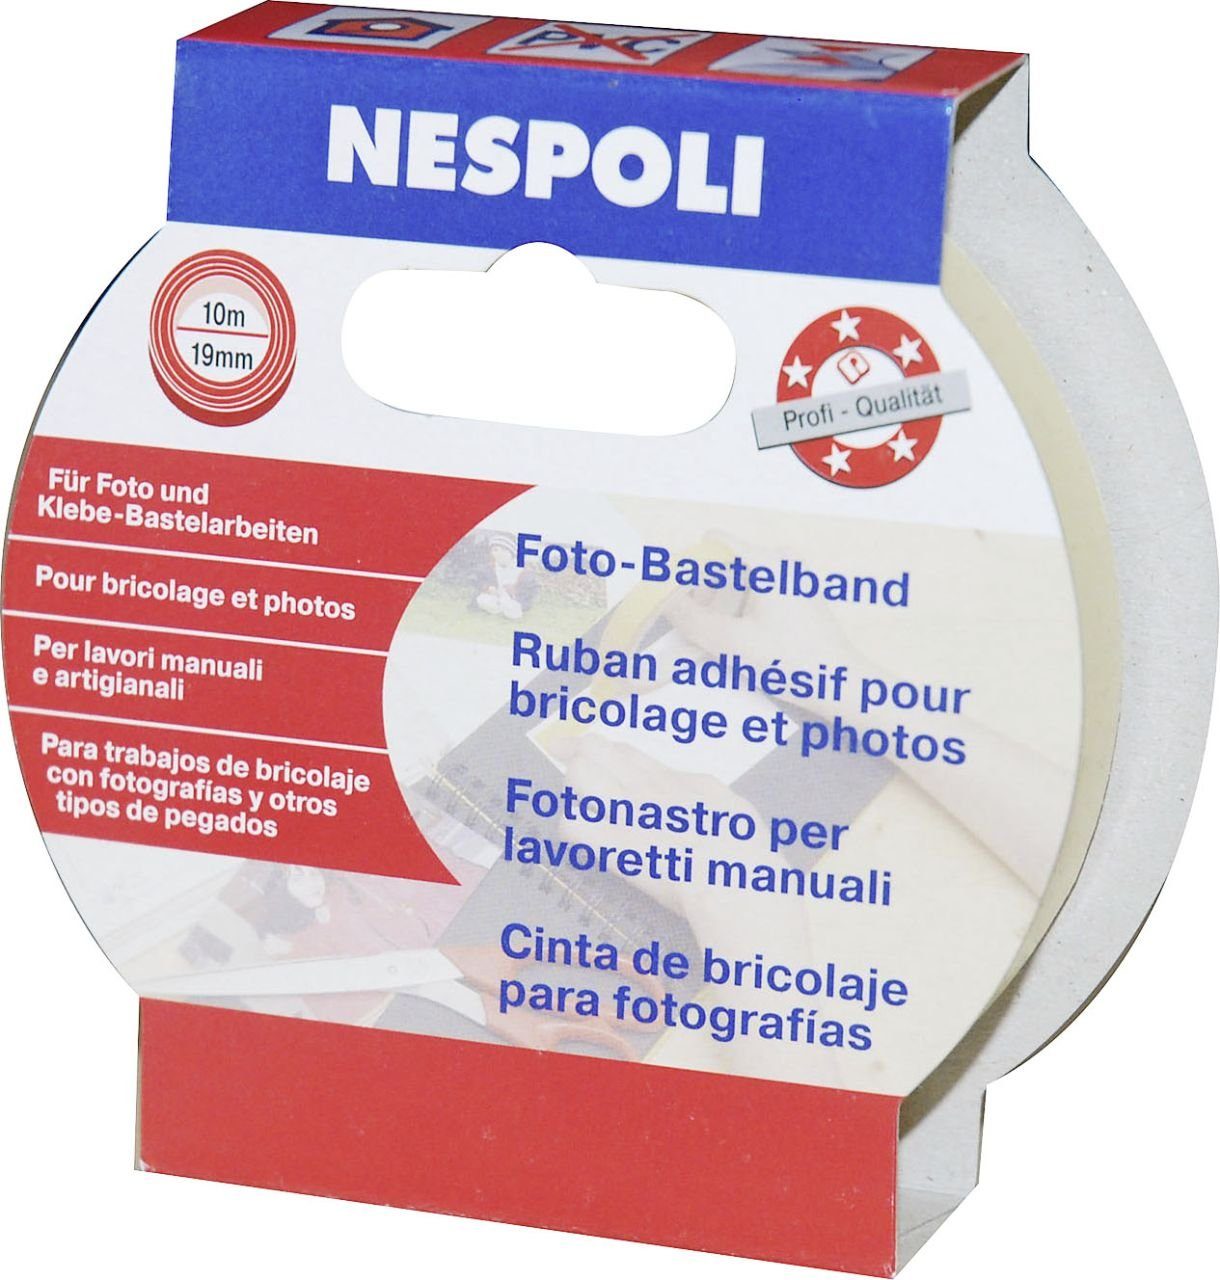 Nespoli Klebehaken Nespoli Foto- und Bastelband 19 mm x 10 m